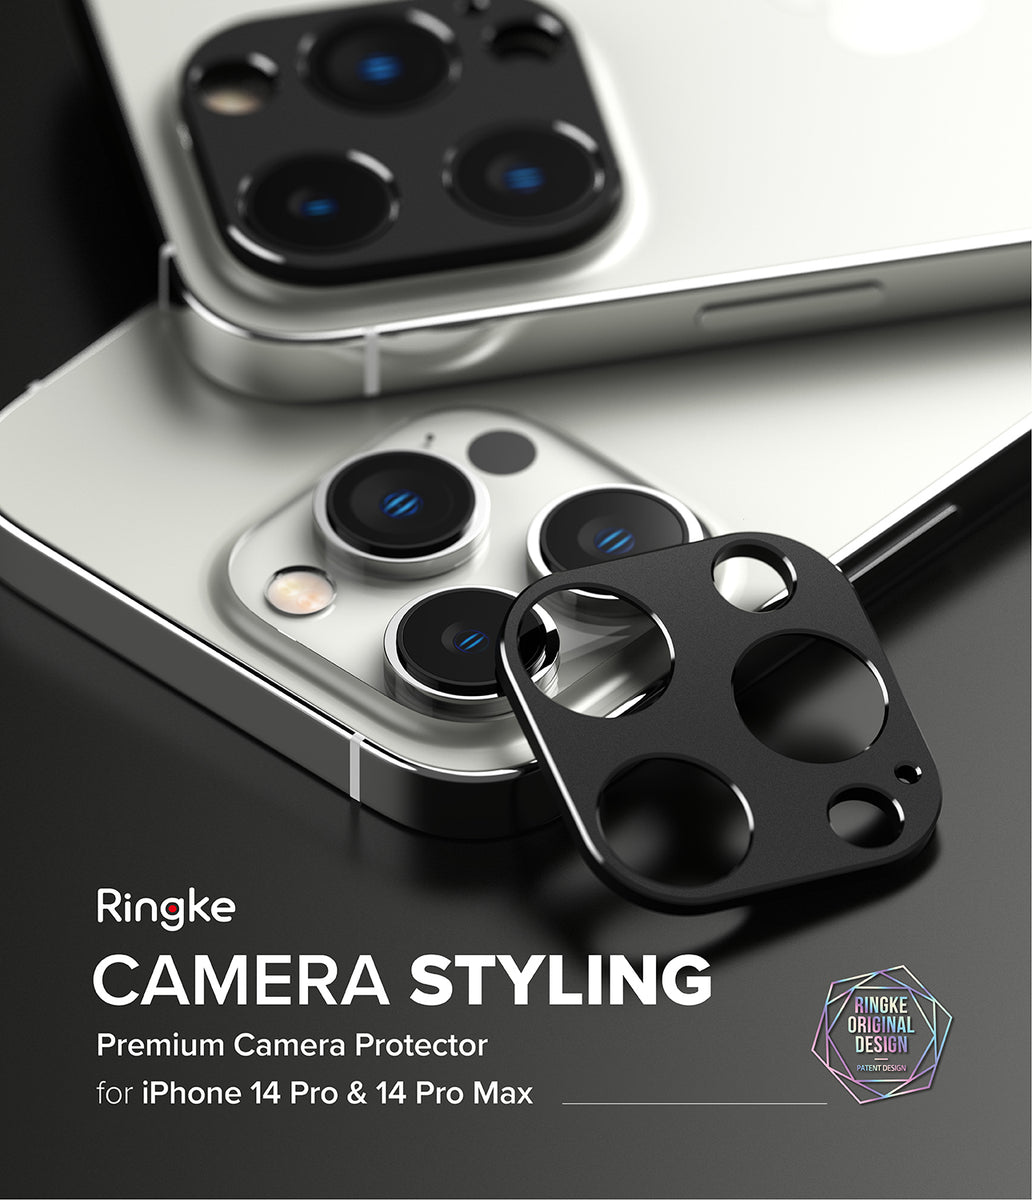  Ringke Marco de lente de cámara de vidrio compatible con iPhone  14 y protector de lente de cámara para iPhone 14 Plus, cubiertas de vidrio  y marcos de aleación de aluminio